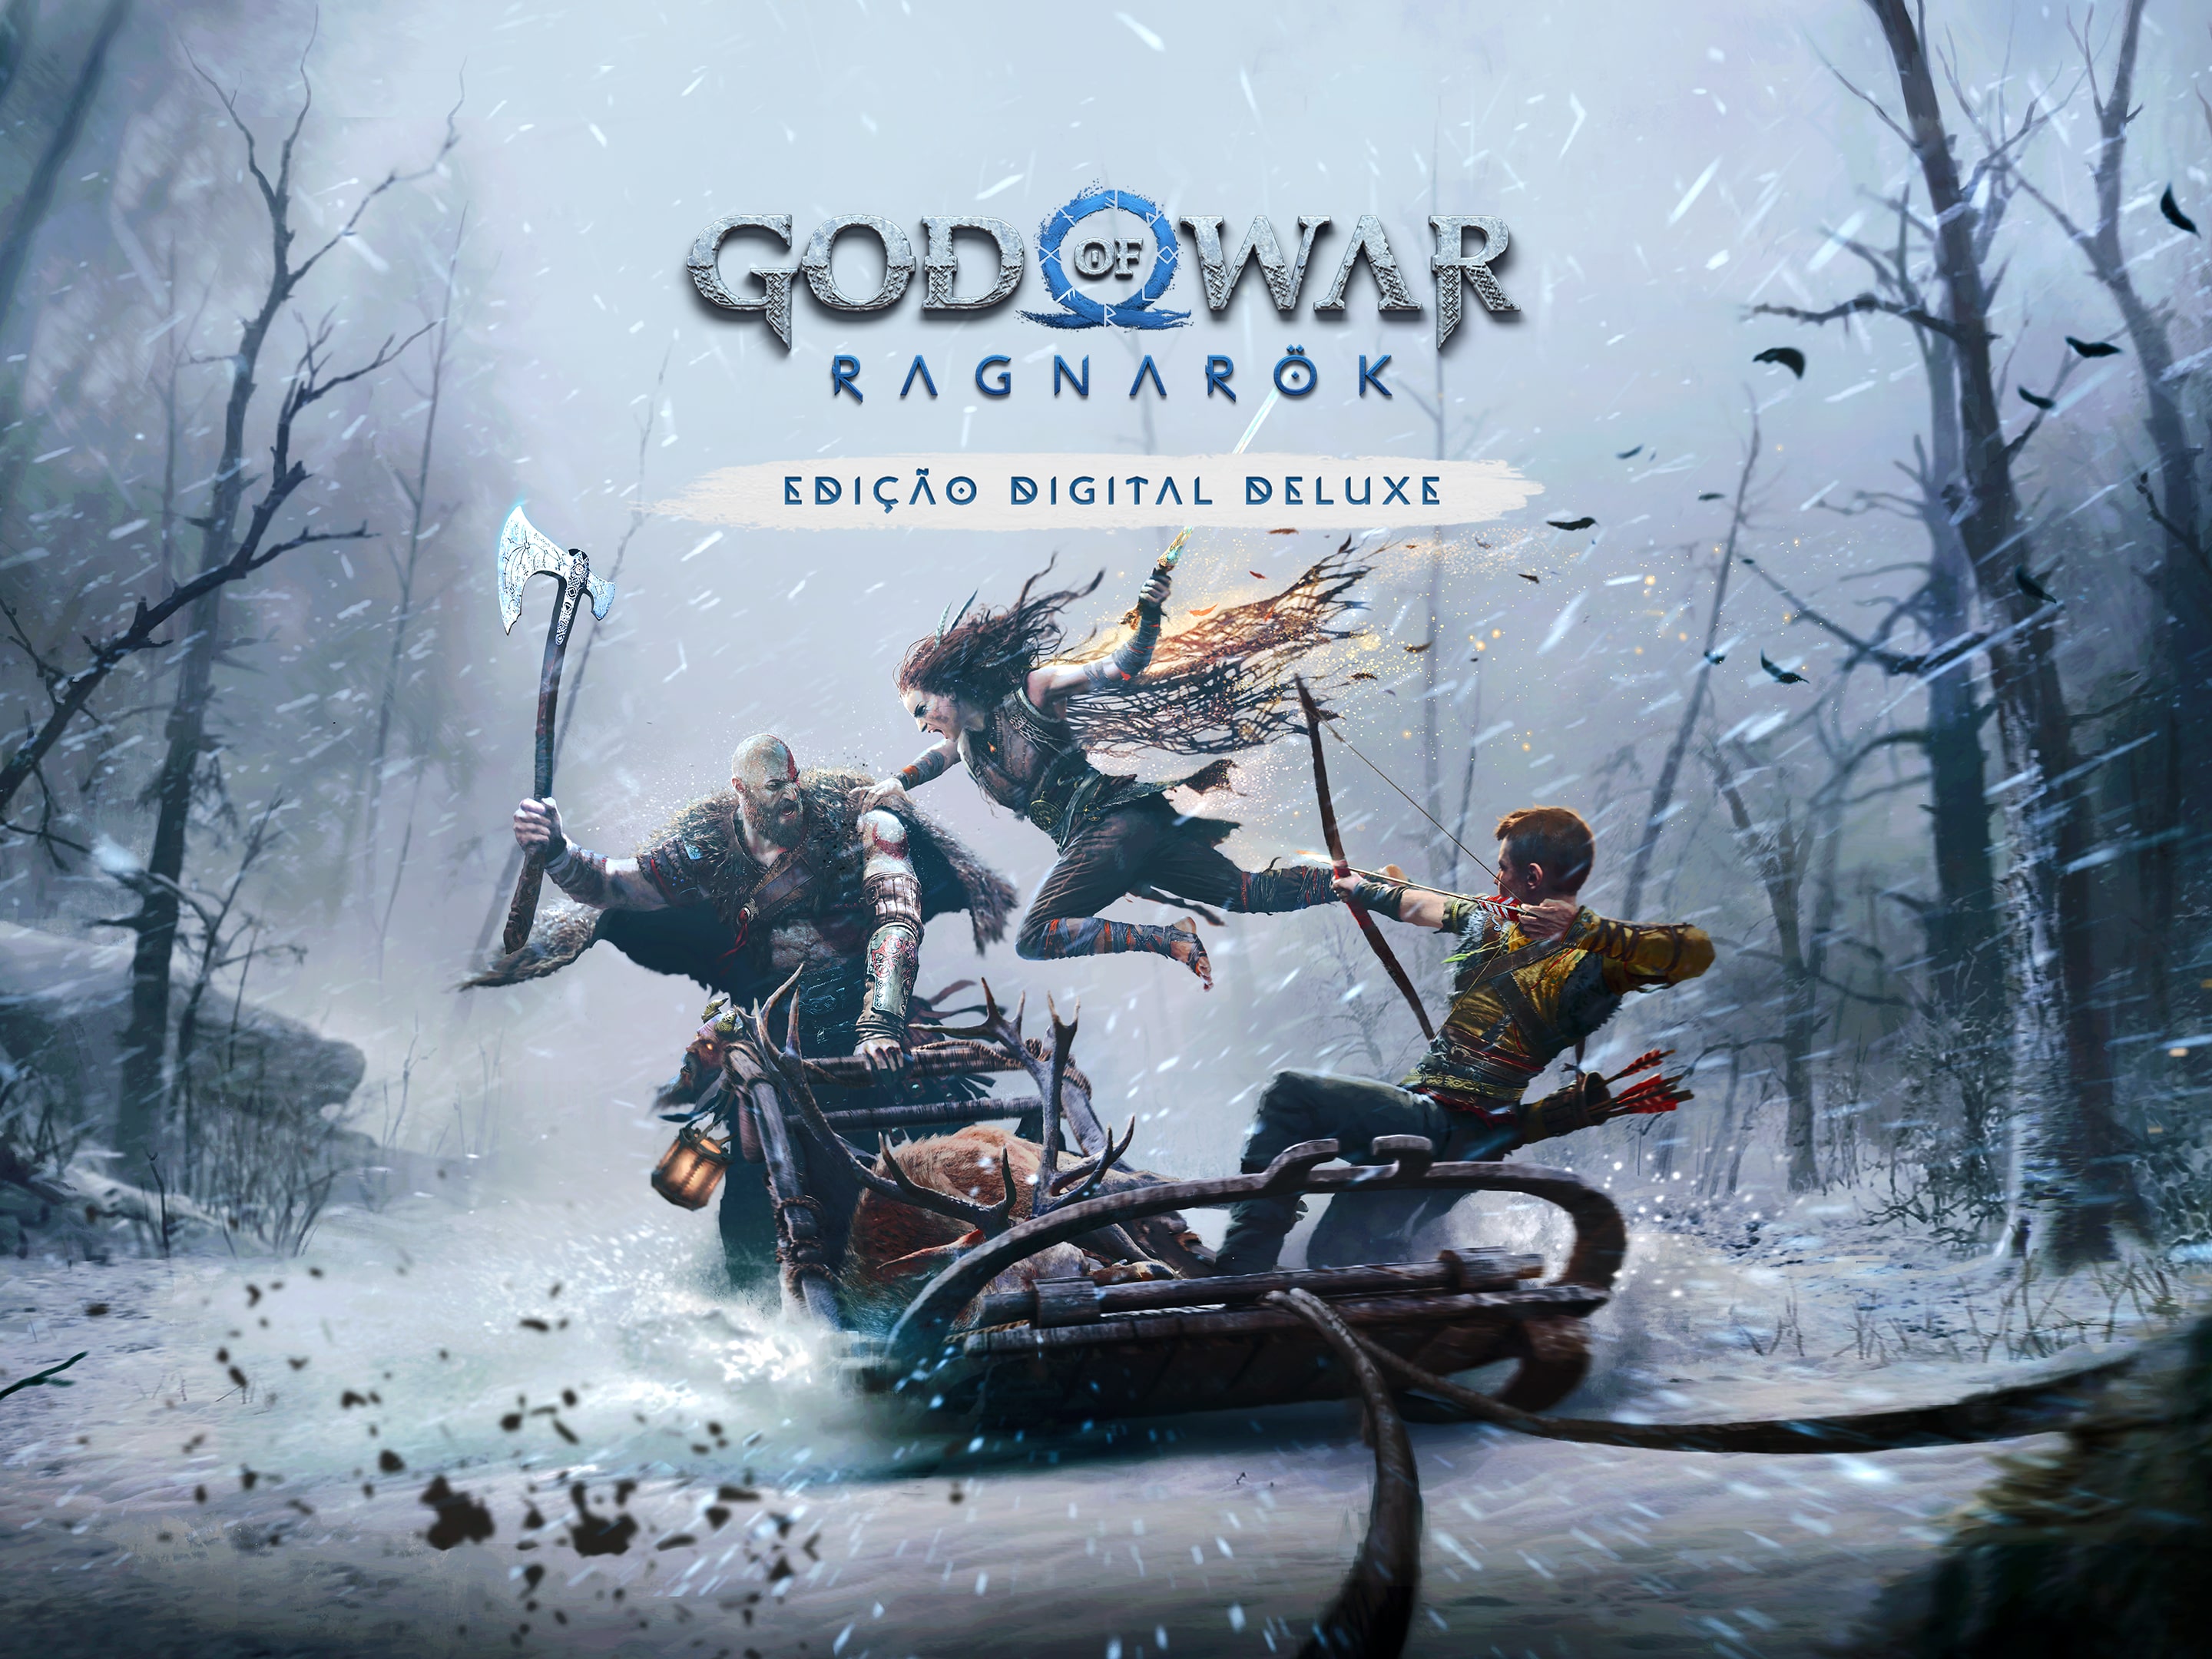 Jogo God of War: Ragnarok (Edição de Lançamento) - PS4 - Sony